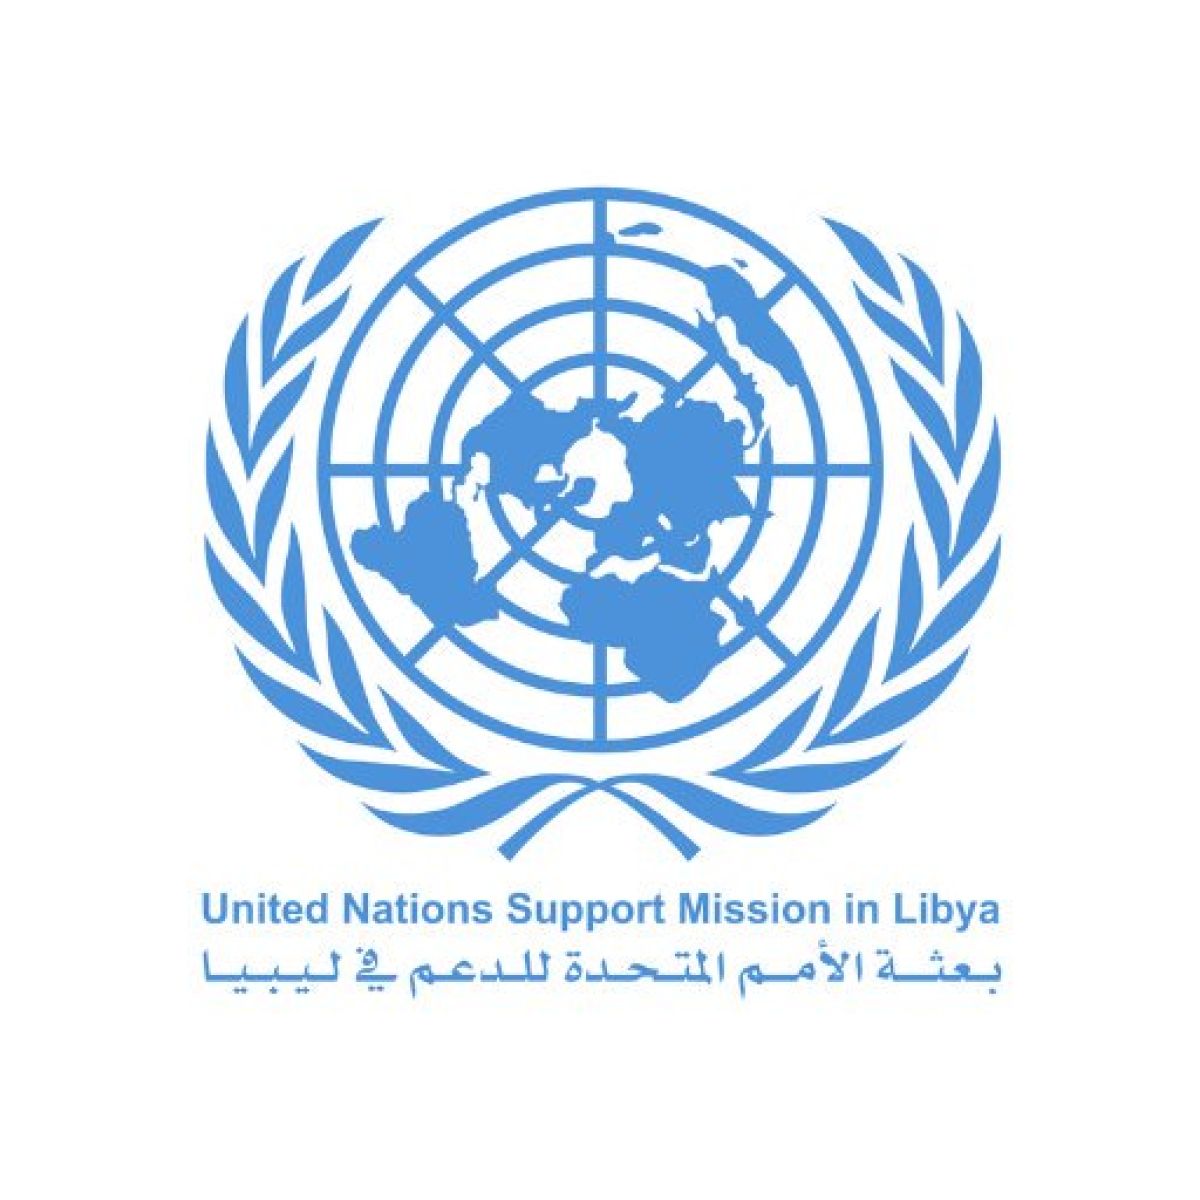 اجتماع تقني لممثلي المؤسسات المالية الليبية الرئيسية بمقر الأمم المتحدة في جنيف يوم الاثنين